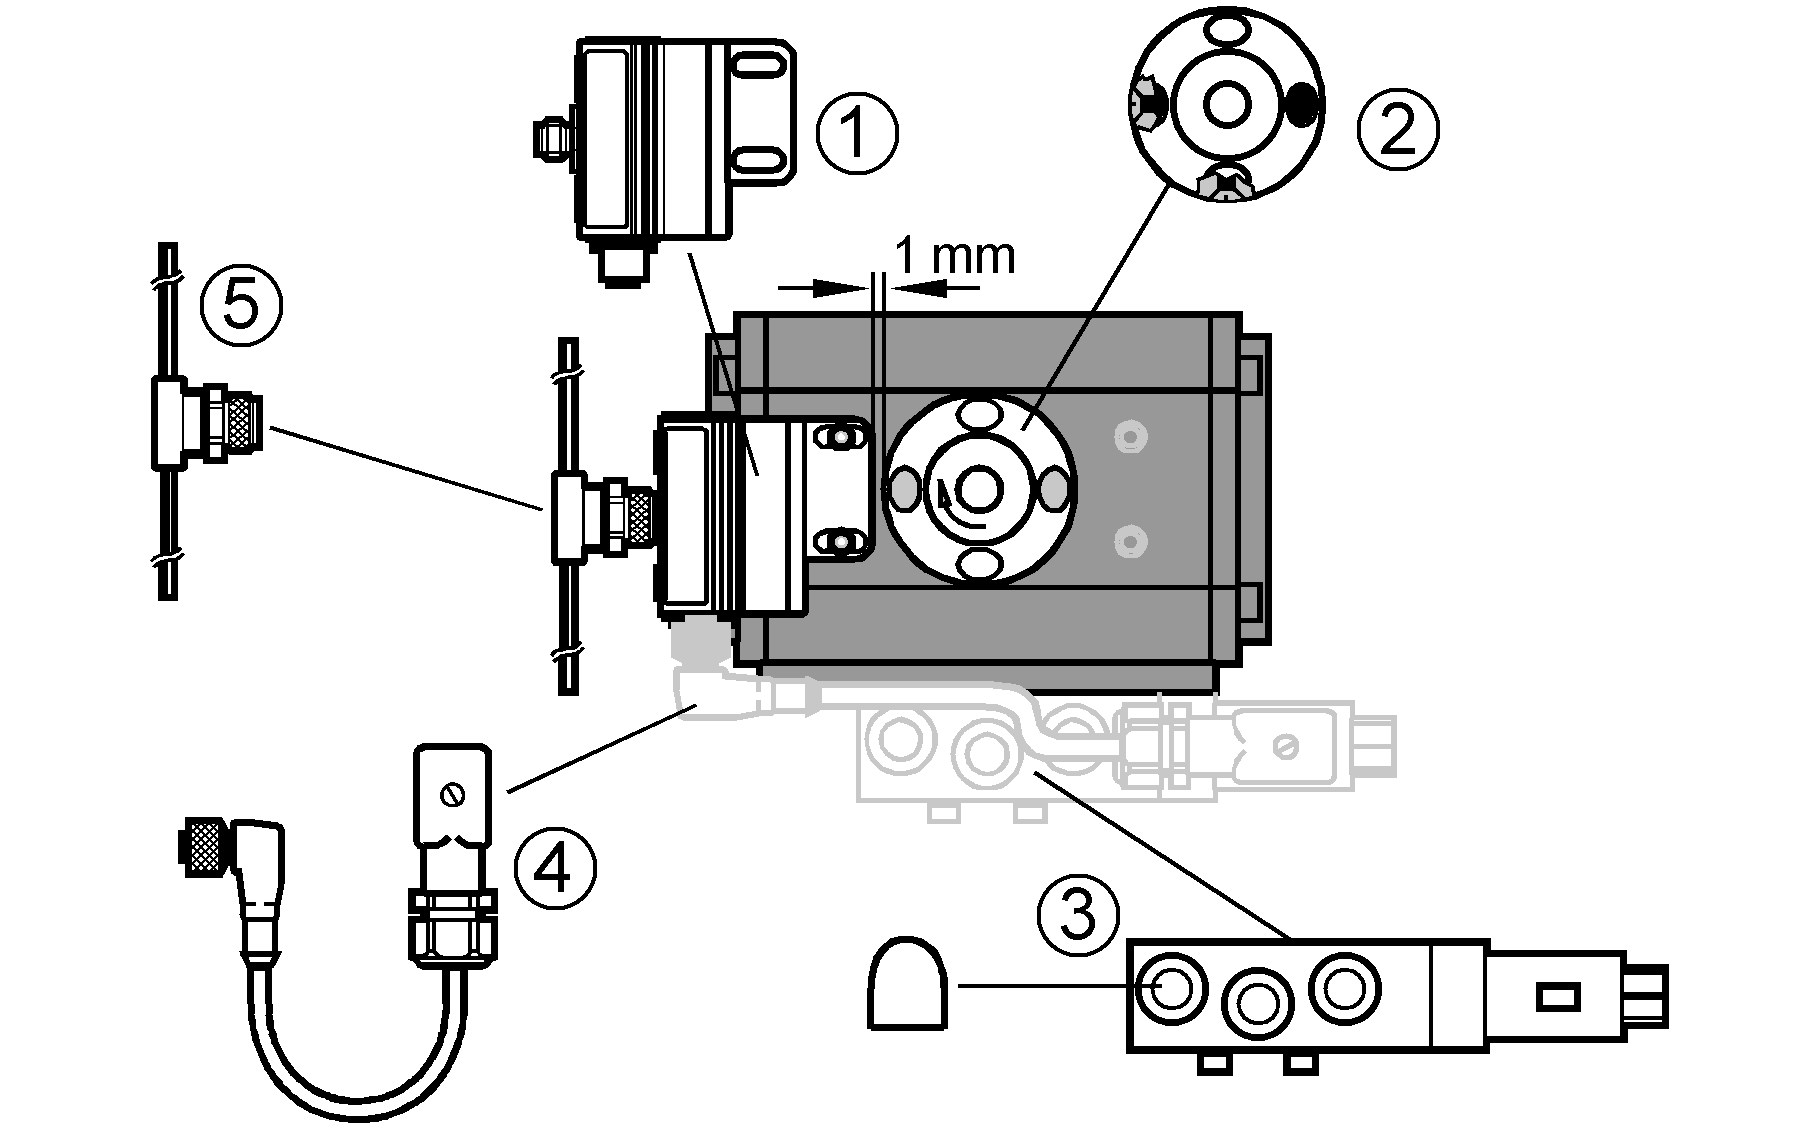 1: T5 Соединение (Bestell-Nr. AC2316)<br/>2: Насадка (номер для заказа E17328)<br/>3: Соленоидный клапан 6517 ф.Bürkert и 2 глушителя 780780N<br/>4: Соединительный кабель T5 и штепсель для клапана (номер для заказа E10845)<br/>5: Ответвитель для плоского кабеля T5 / AS-i (номер для заказа E70271)